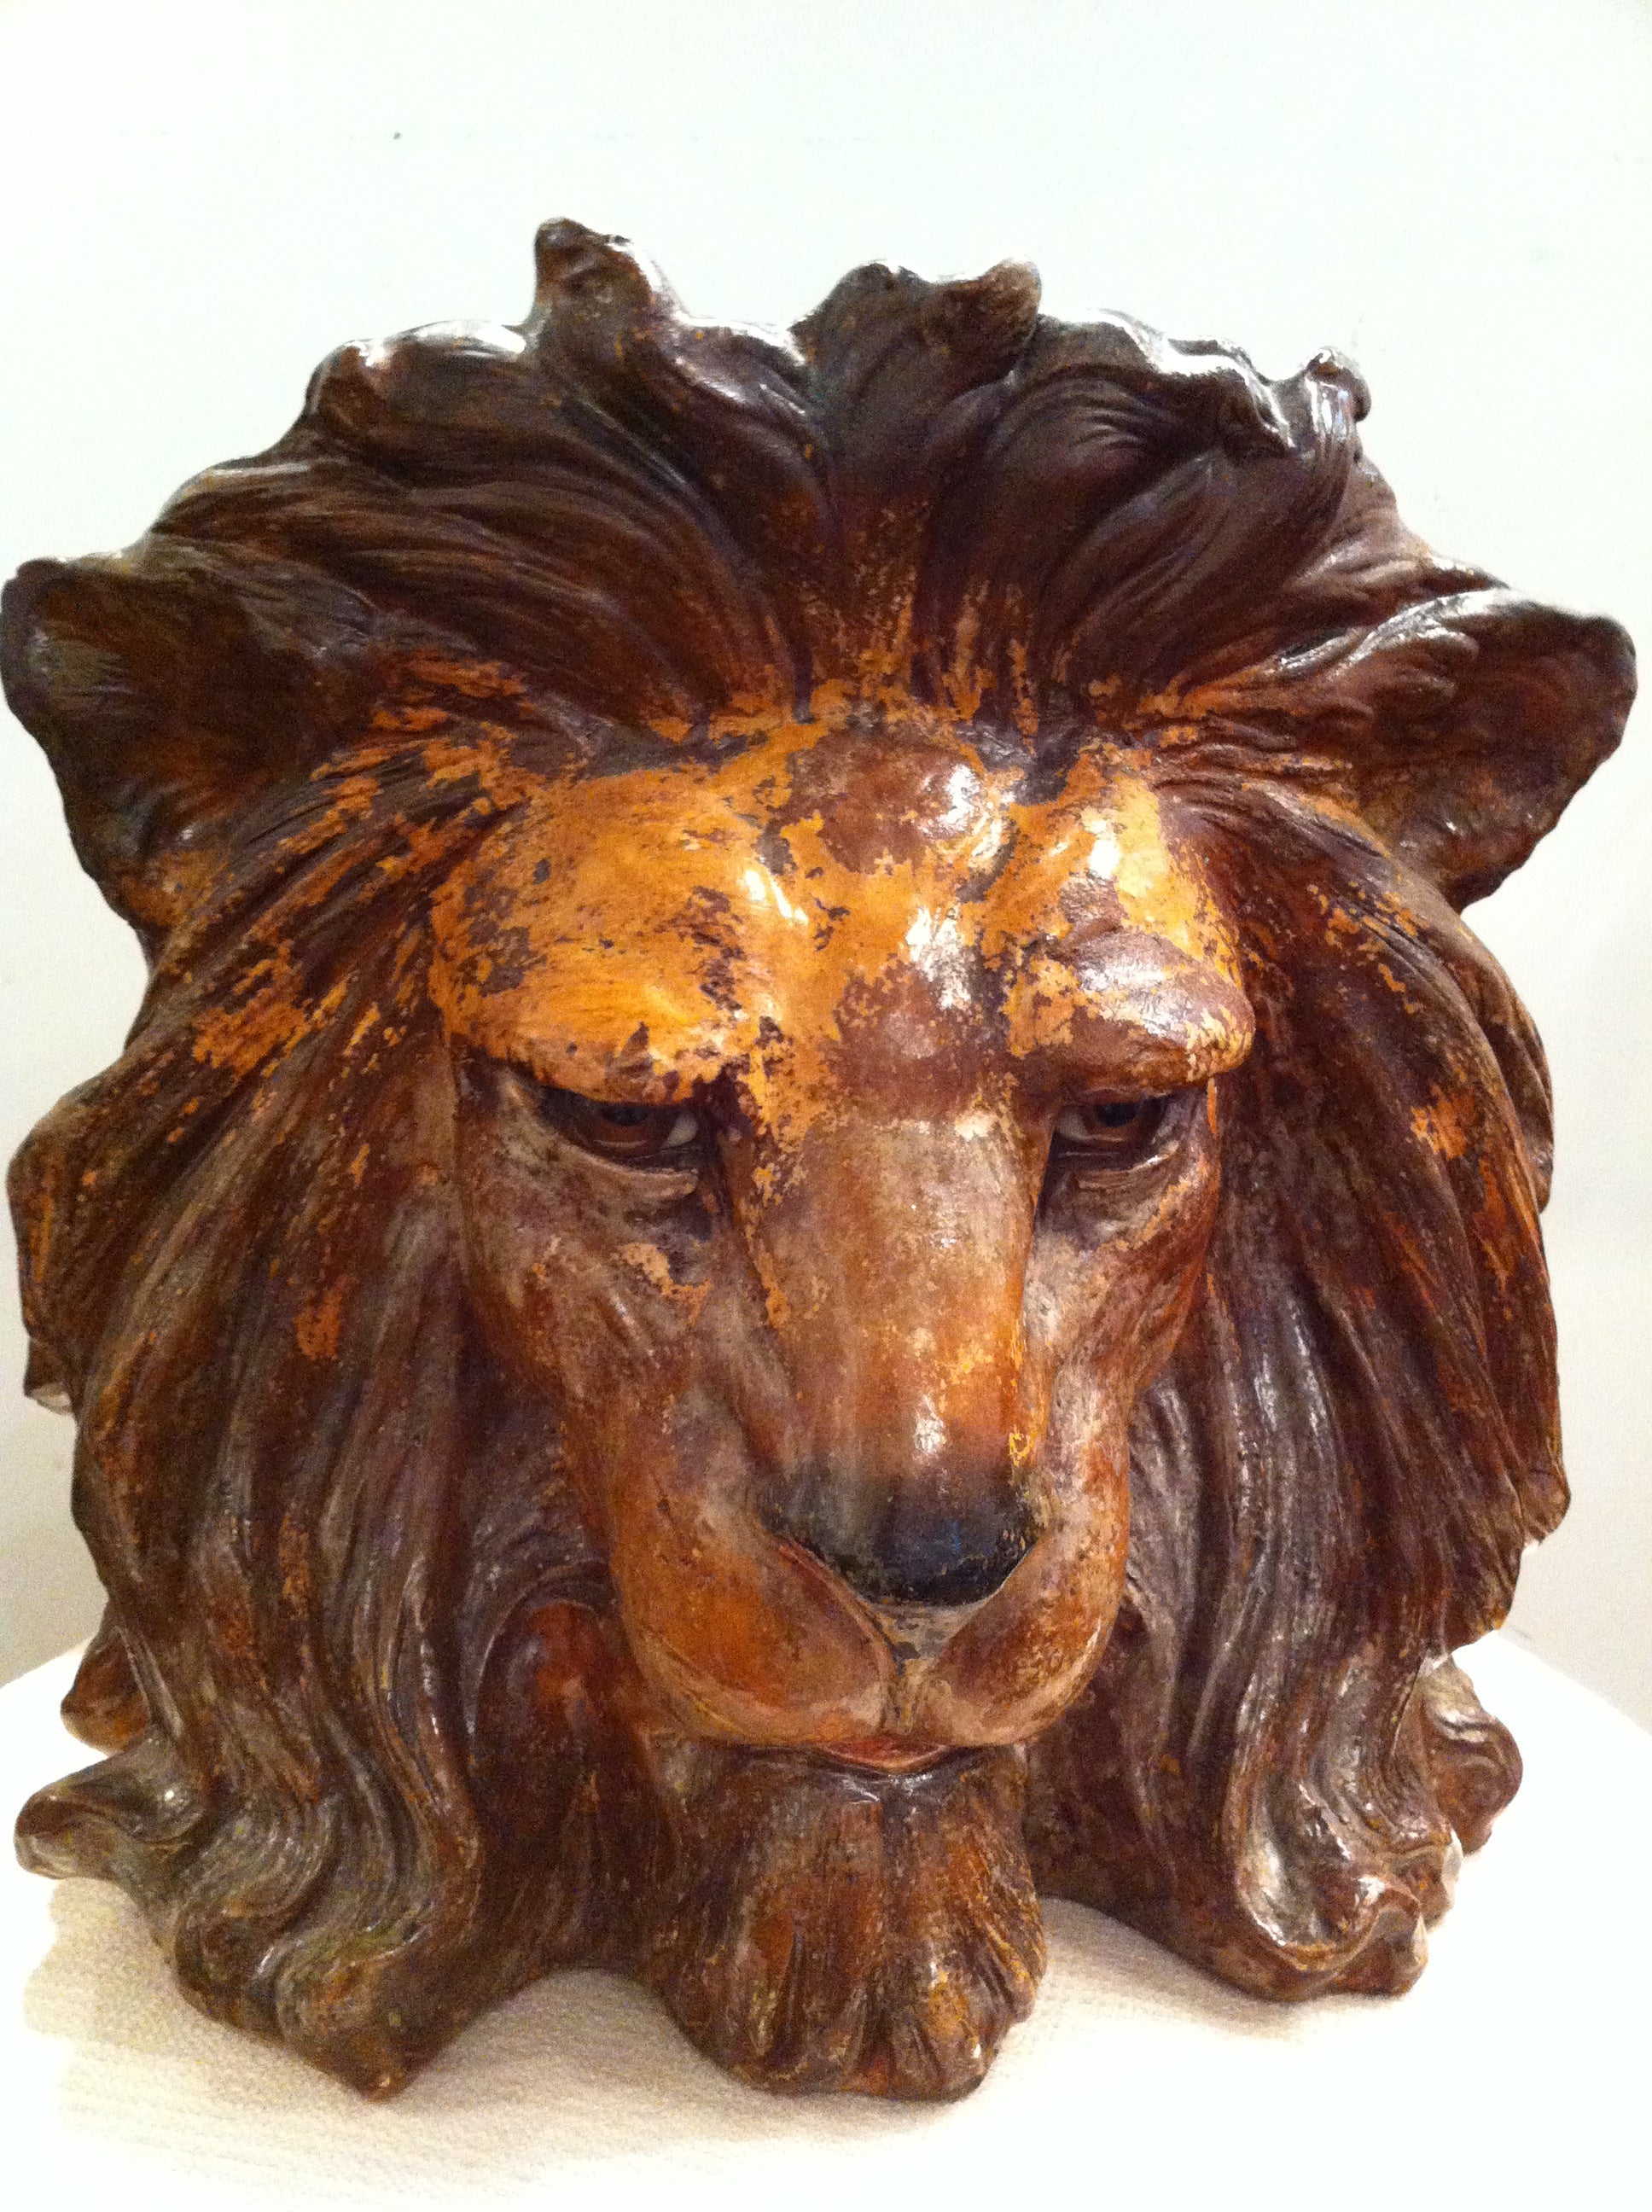 Pair ceramic bretby Lion planters" Estate Rock hudson"